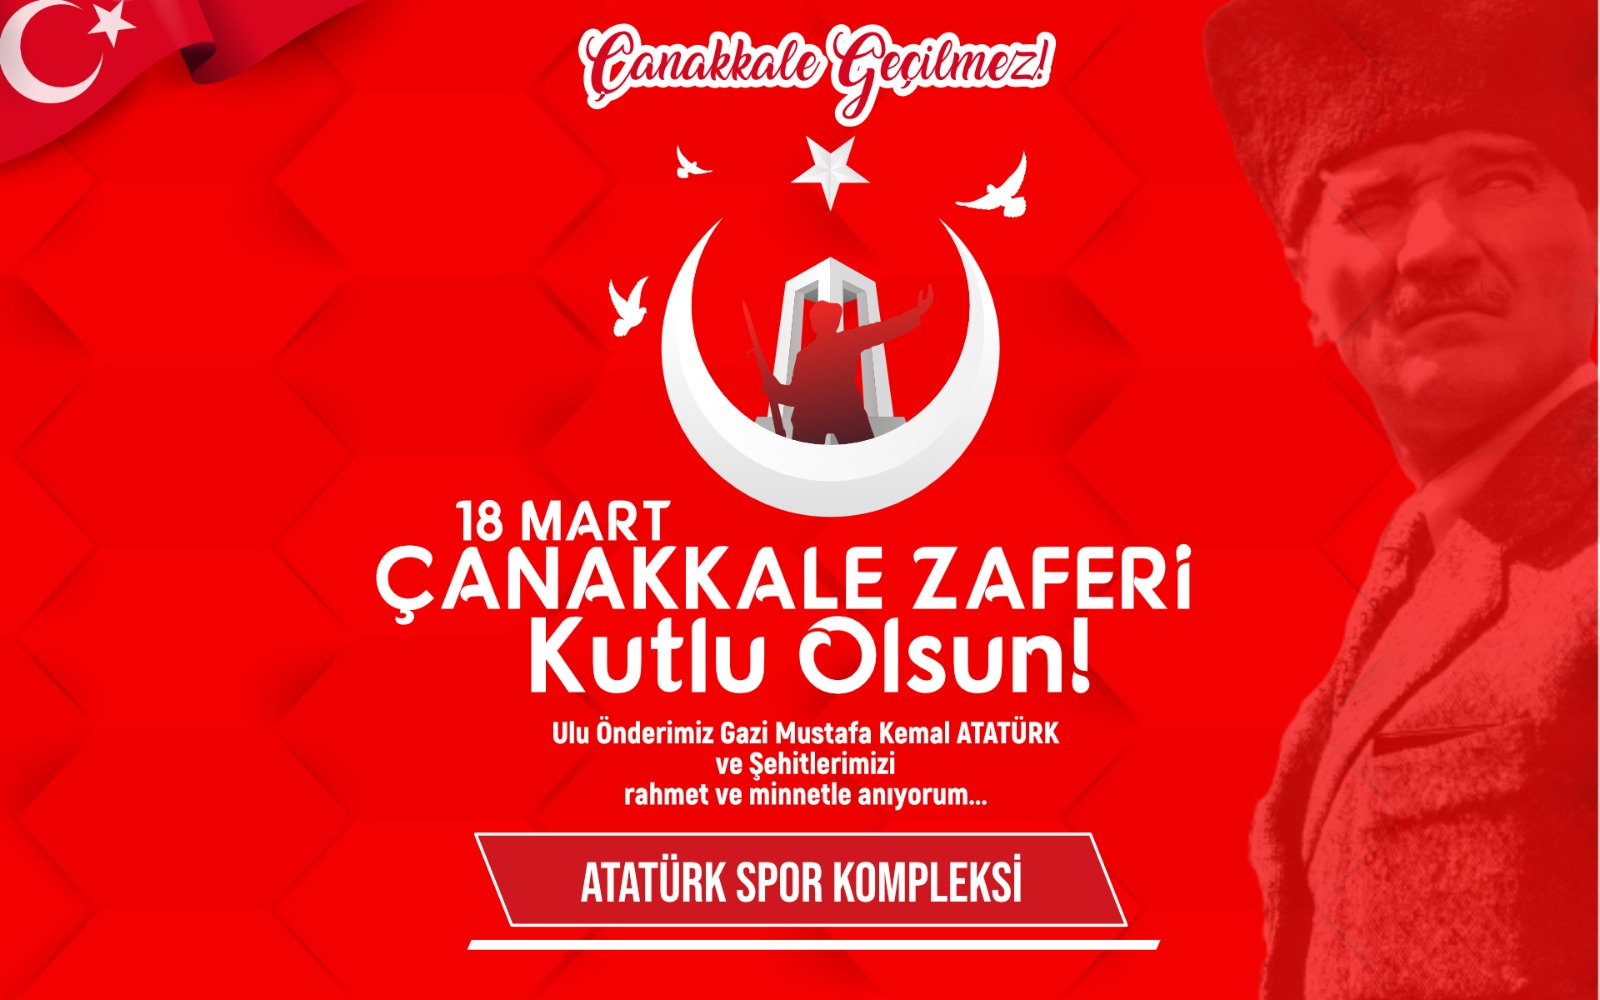 Atatürk Spor Kompleksin’inde Kutlama mesajı